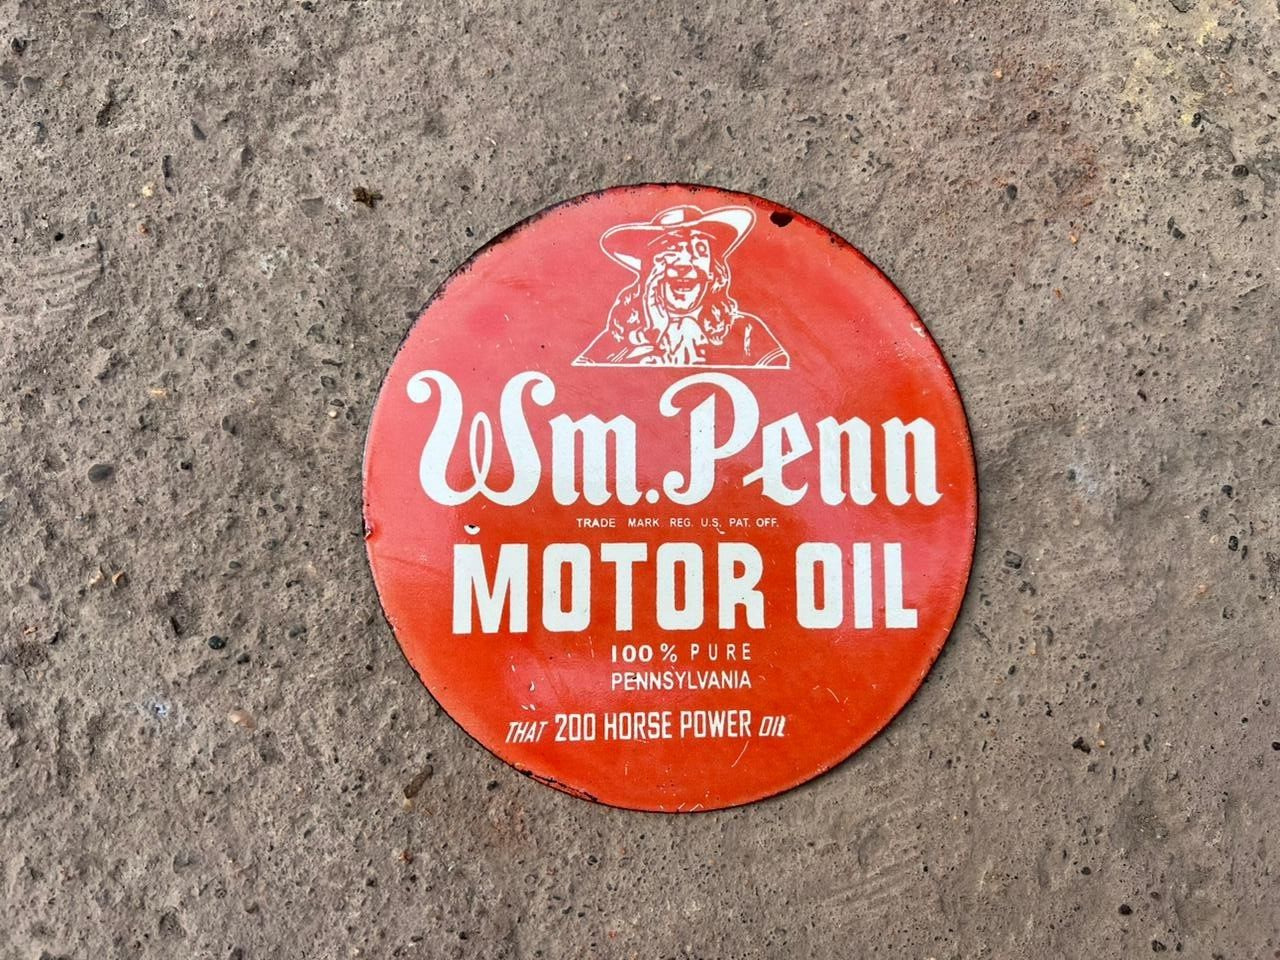 WM.PENN MOTOR OIL PORCELAIN ENAMEL SIGN 30x30 INCHES